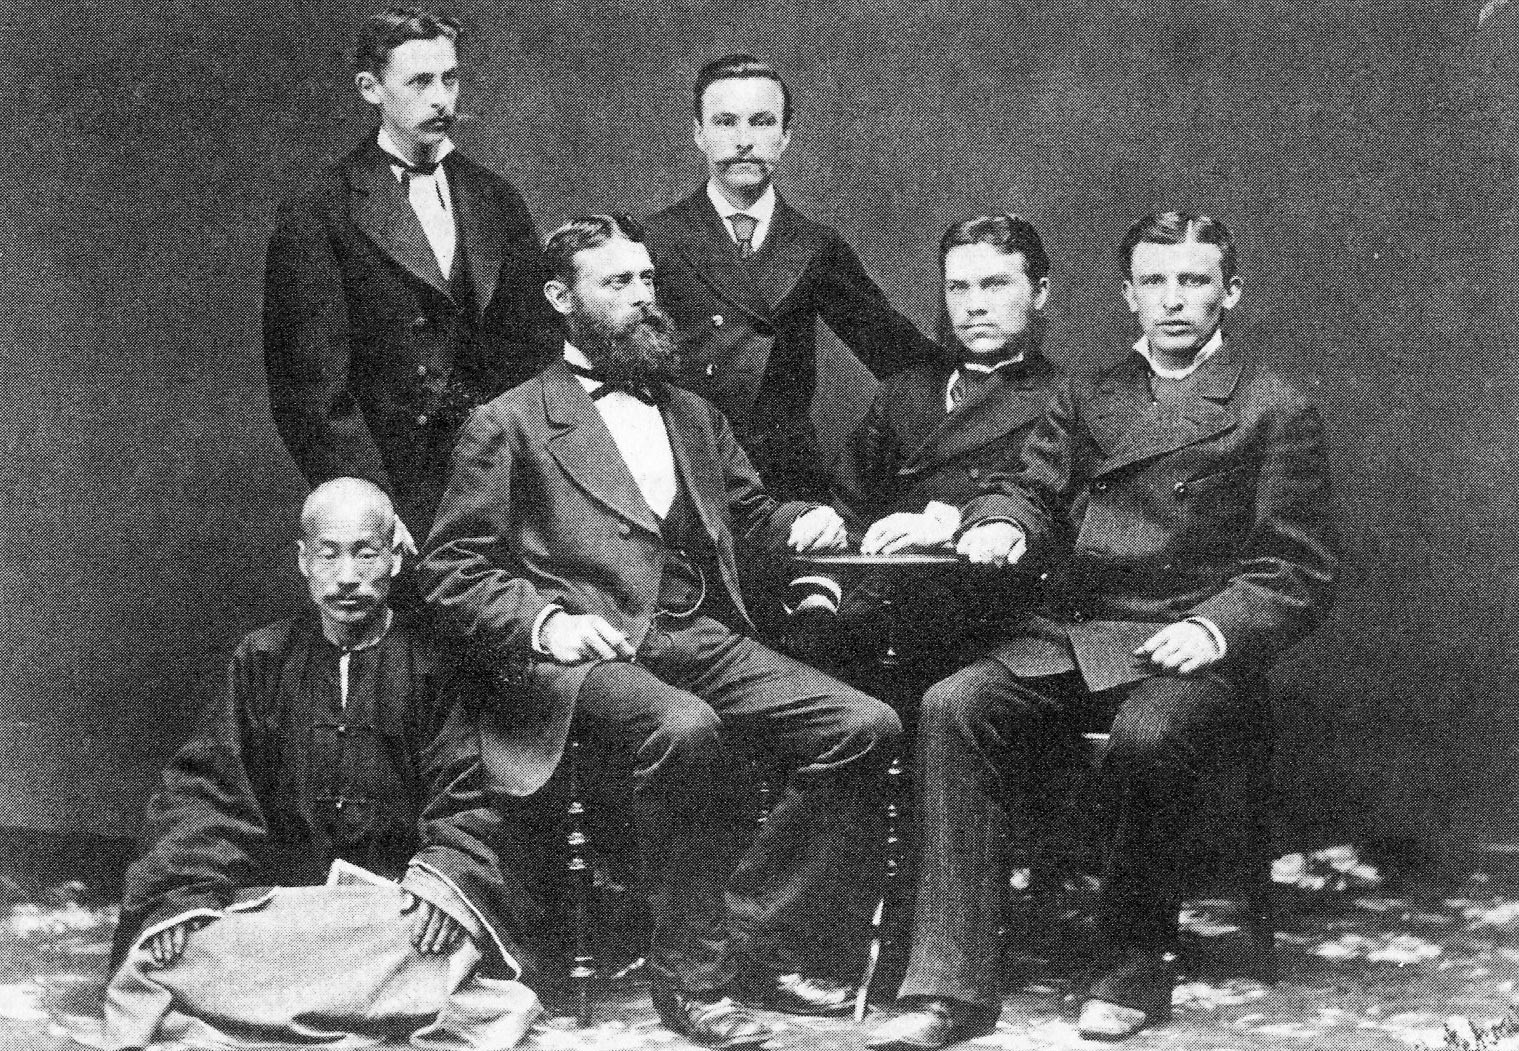 I due Gustav, con Adolf Dattan e altri partner

